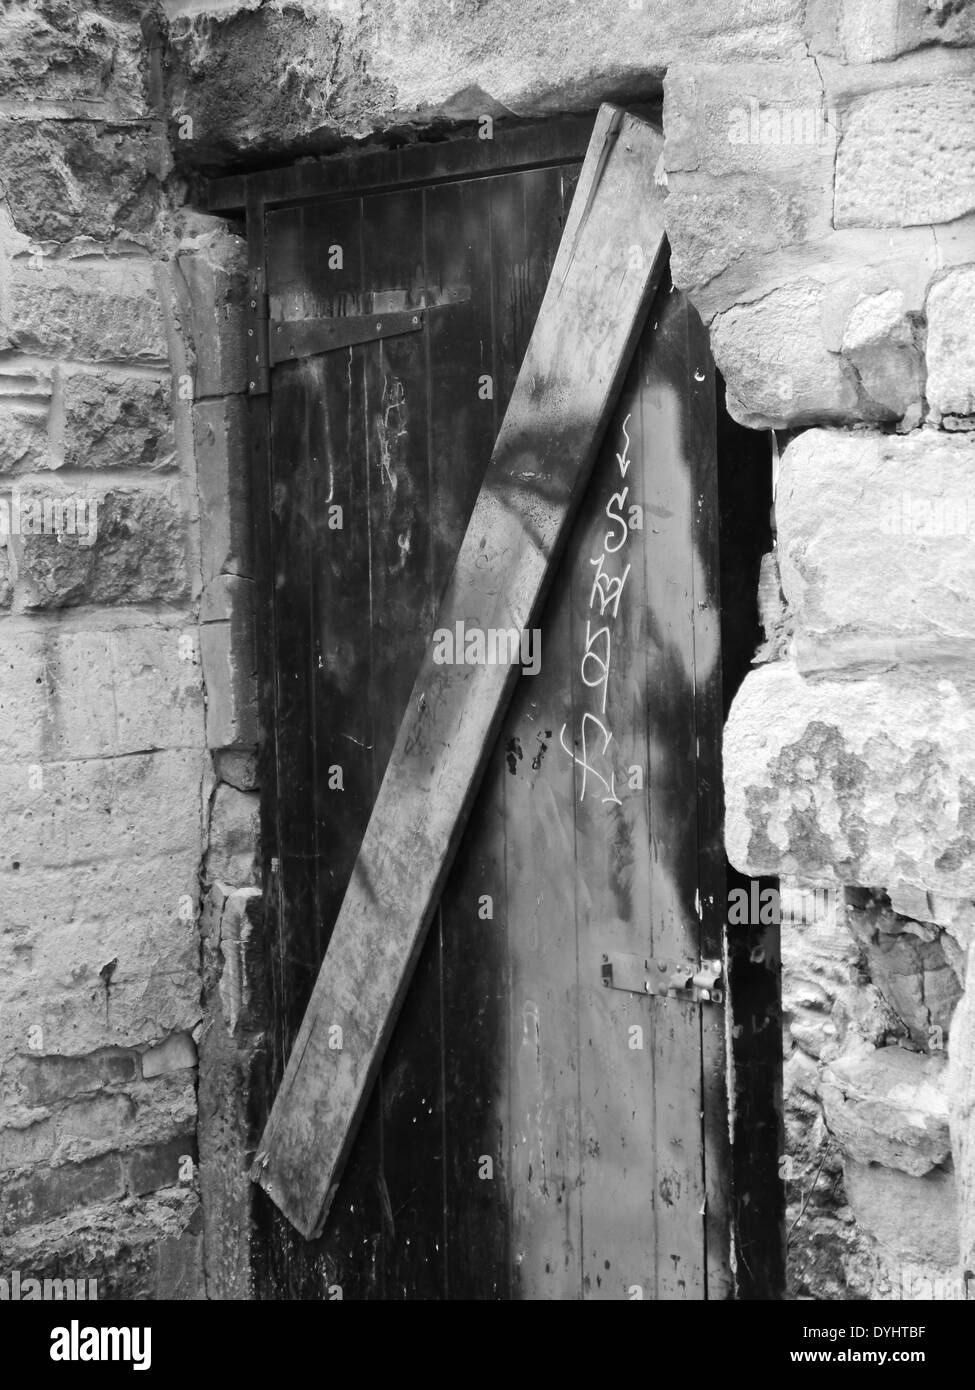 Abbandonata / beni abbandonati con grossolanamente porta sbarrata per prevenire atti di vandalismo, Newcastle upon Tyne, Regno Unito - B&W, bianco e nero Foto Stock